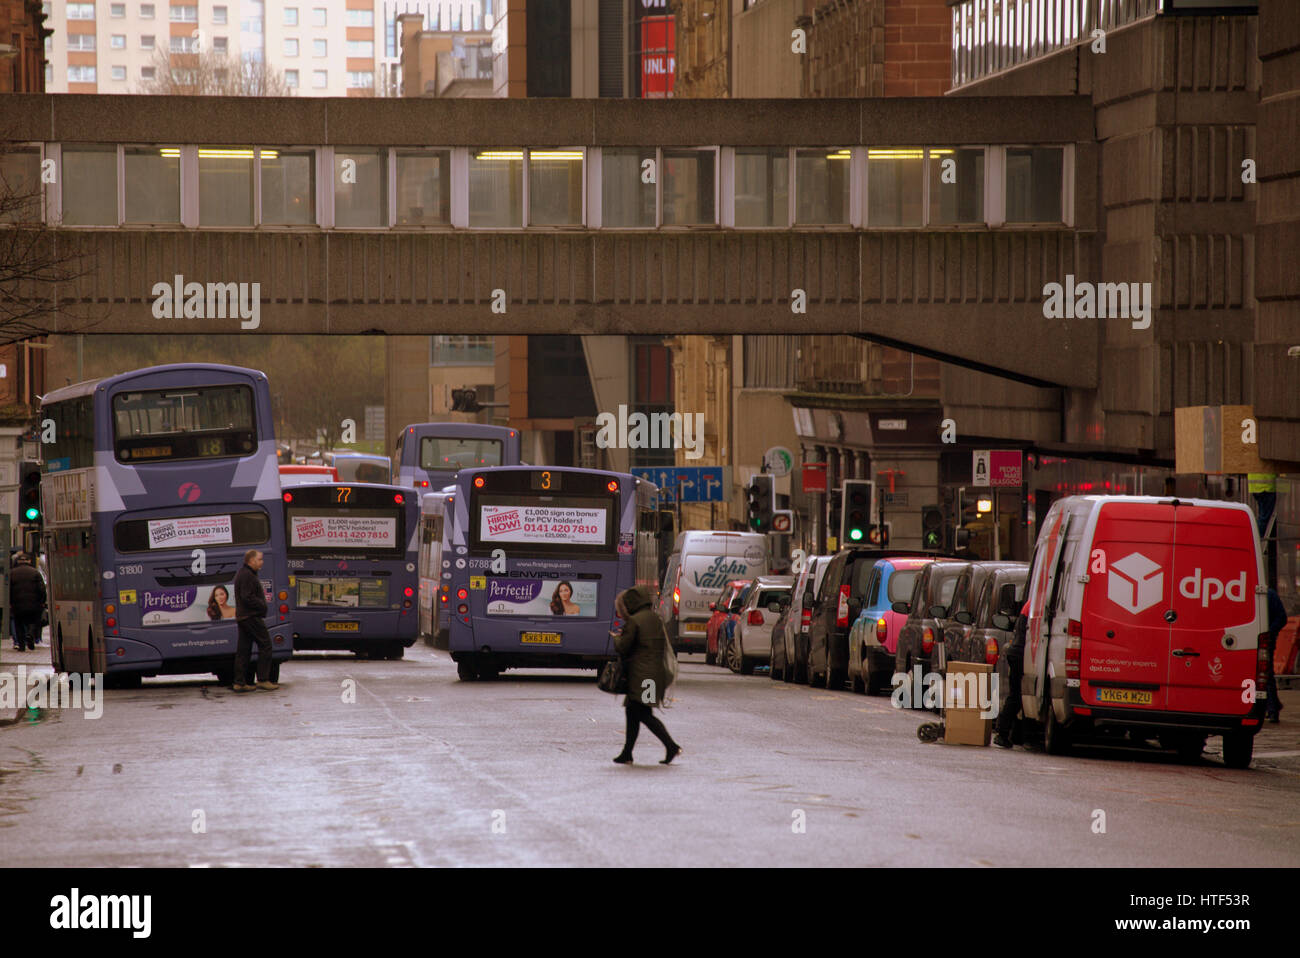 El paisaje urbano de la ciudad de Glasgow street scene autobuses y peatones Foto de stock